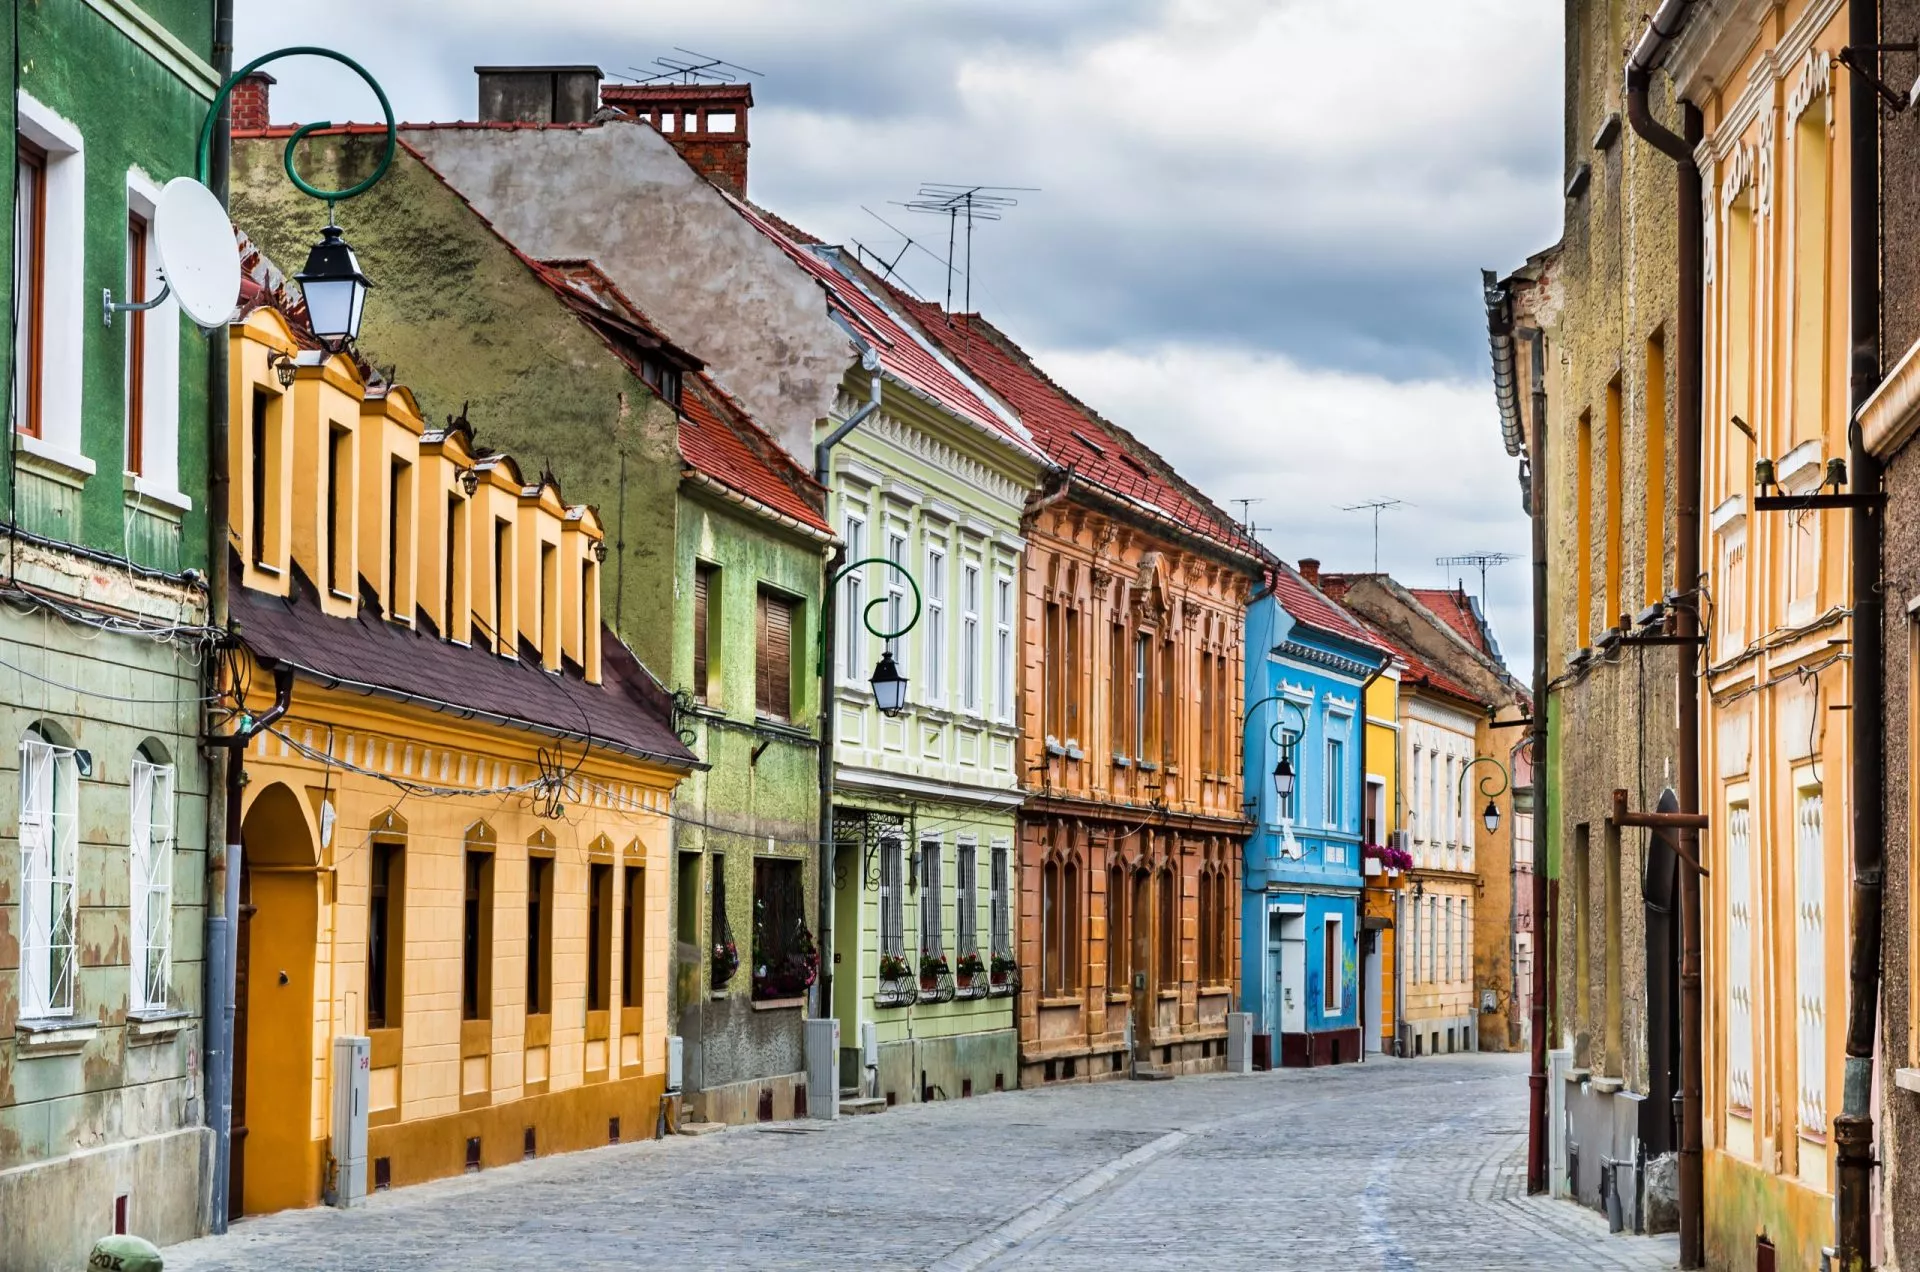 Medieval street in Brasov, Romania